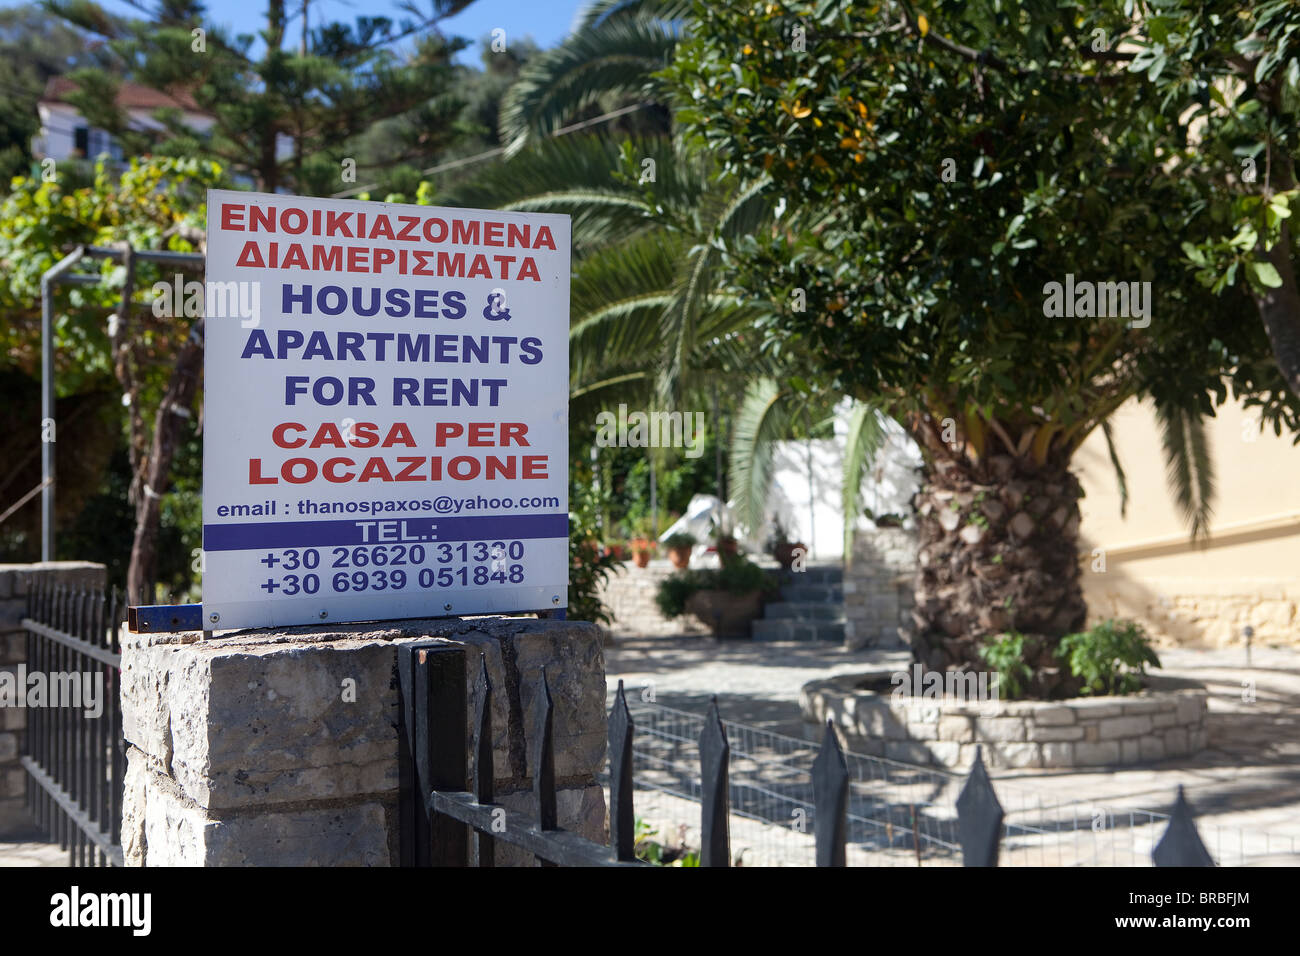 Maisons et Appartements à louer signe sur île de Paxos, Grèce. Banque D'Images